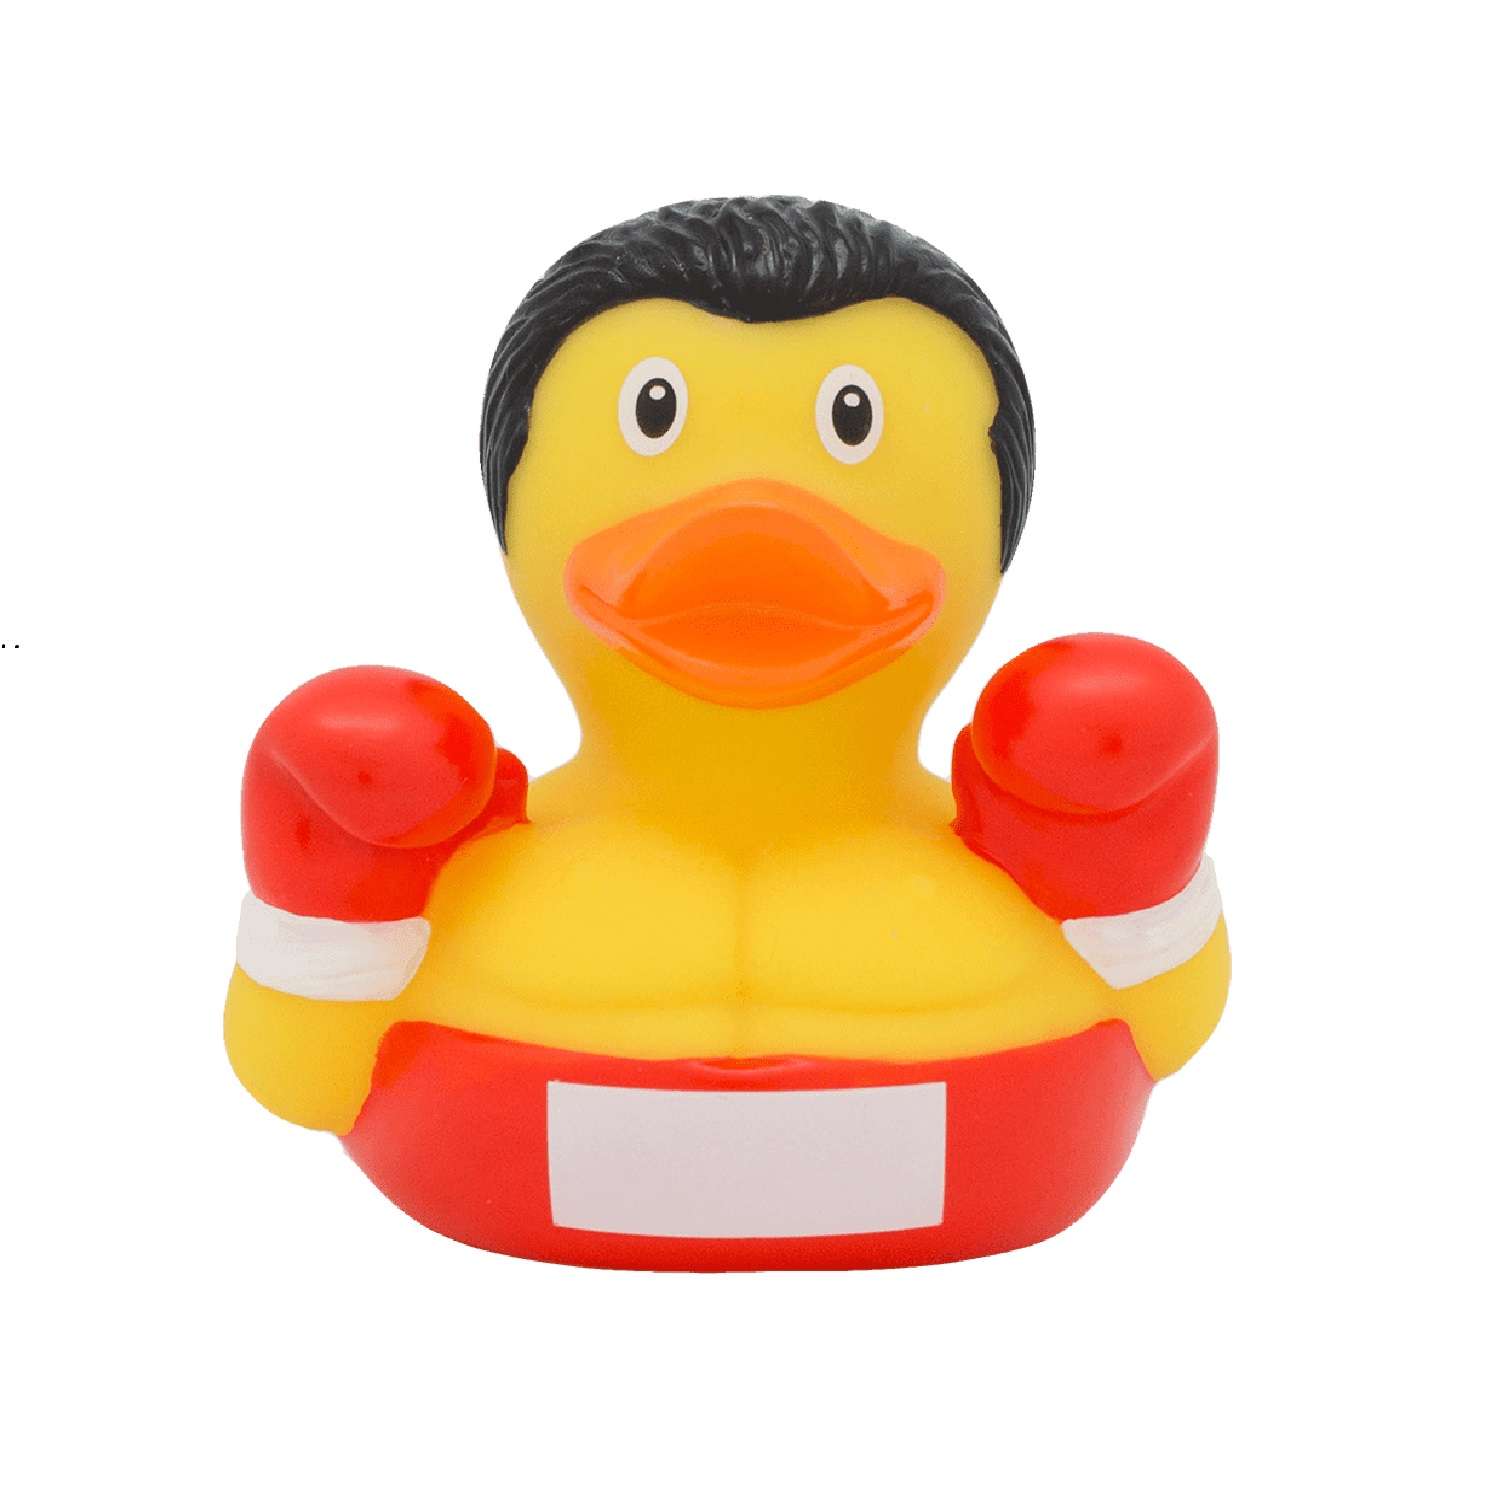 Игрушка Funny ducks для ванной Боксер уточка 1285 - фото 2